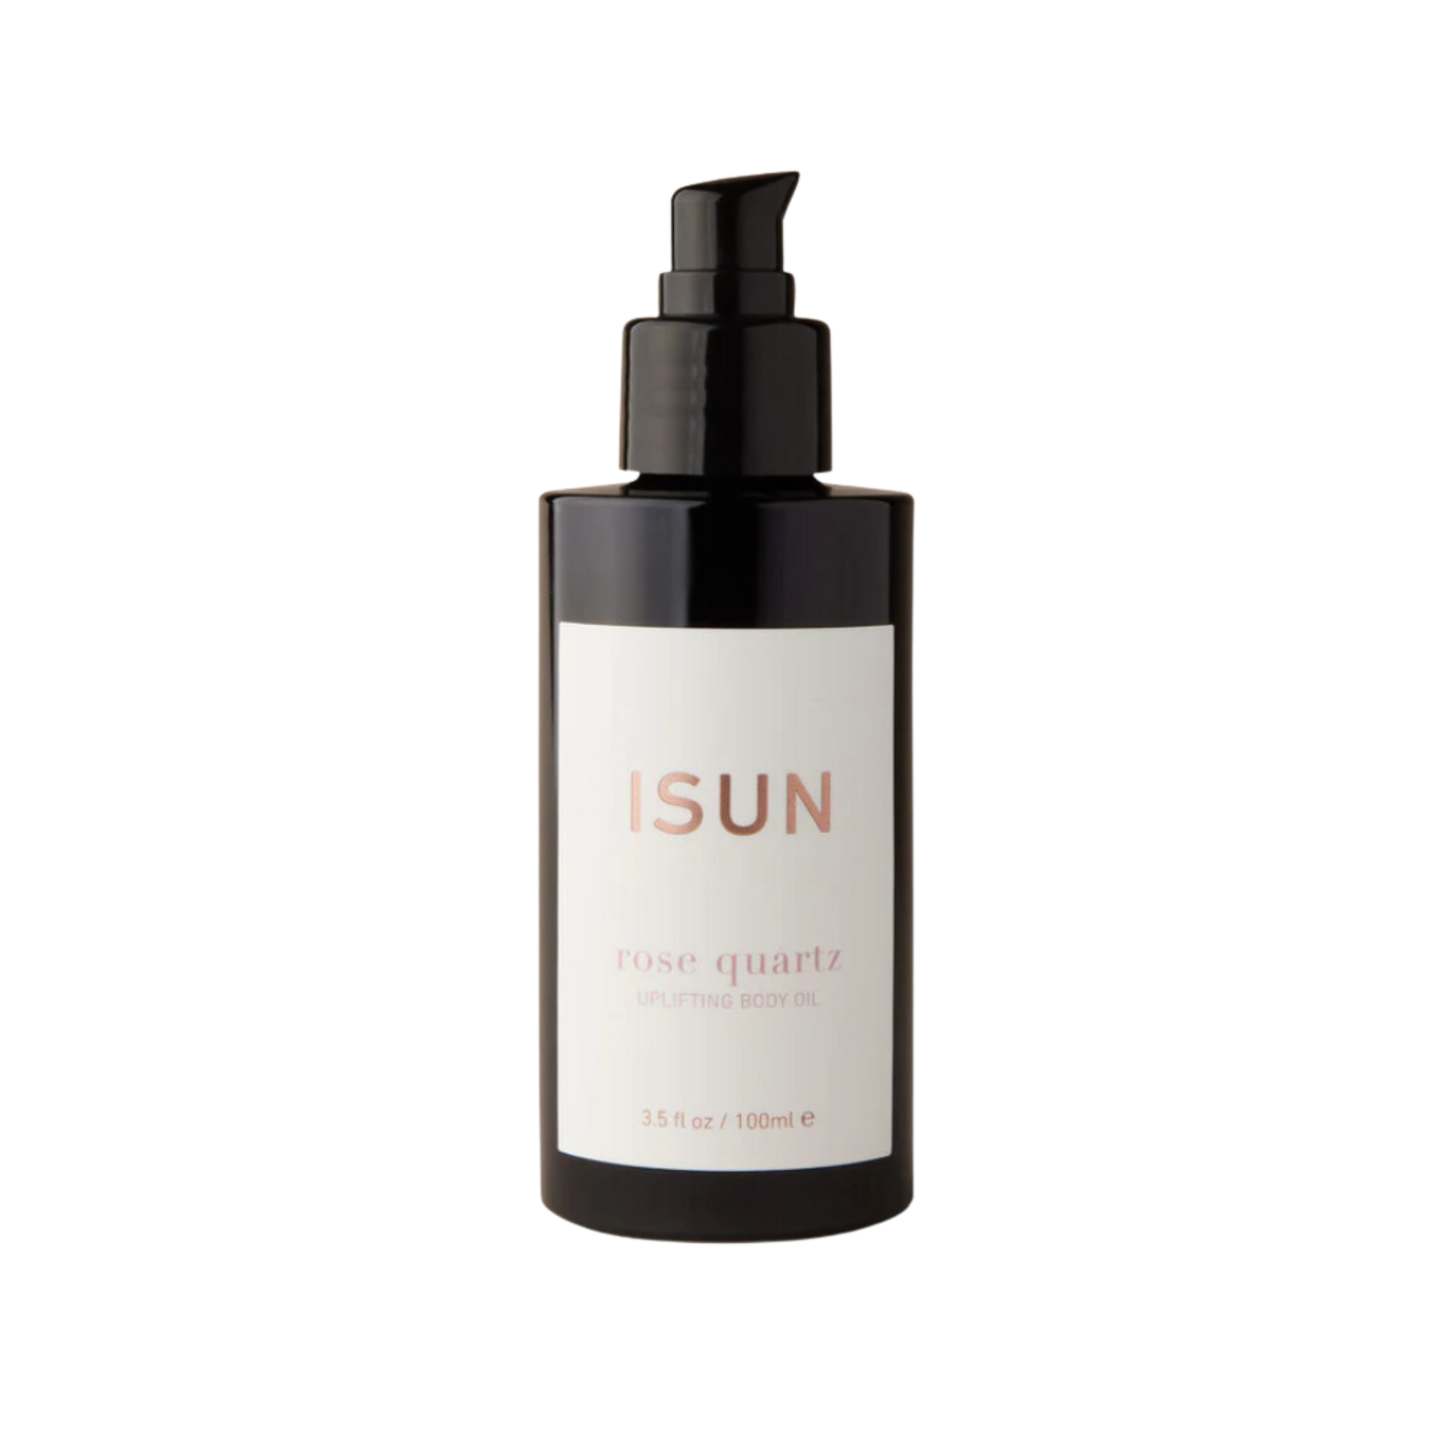 ISun Rose Quartz Uplifting Body Oil